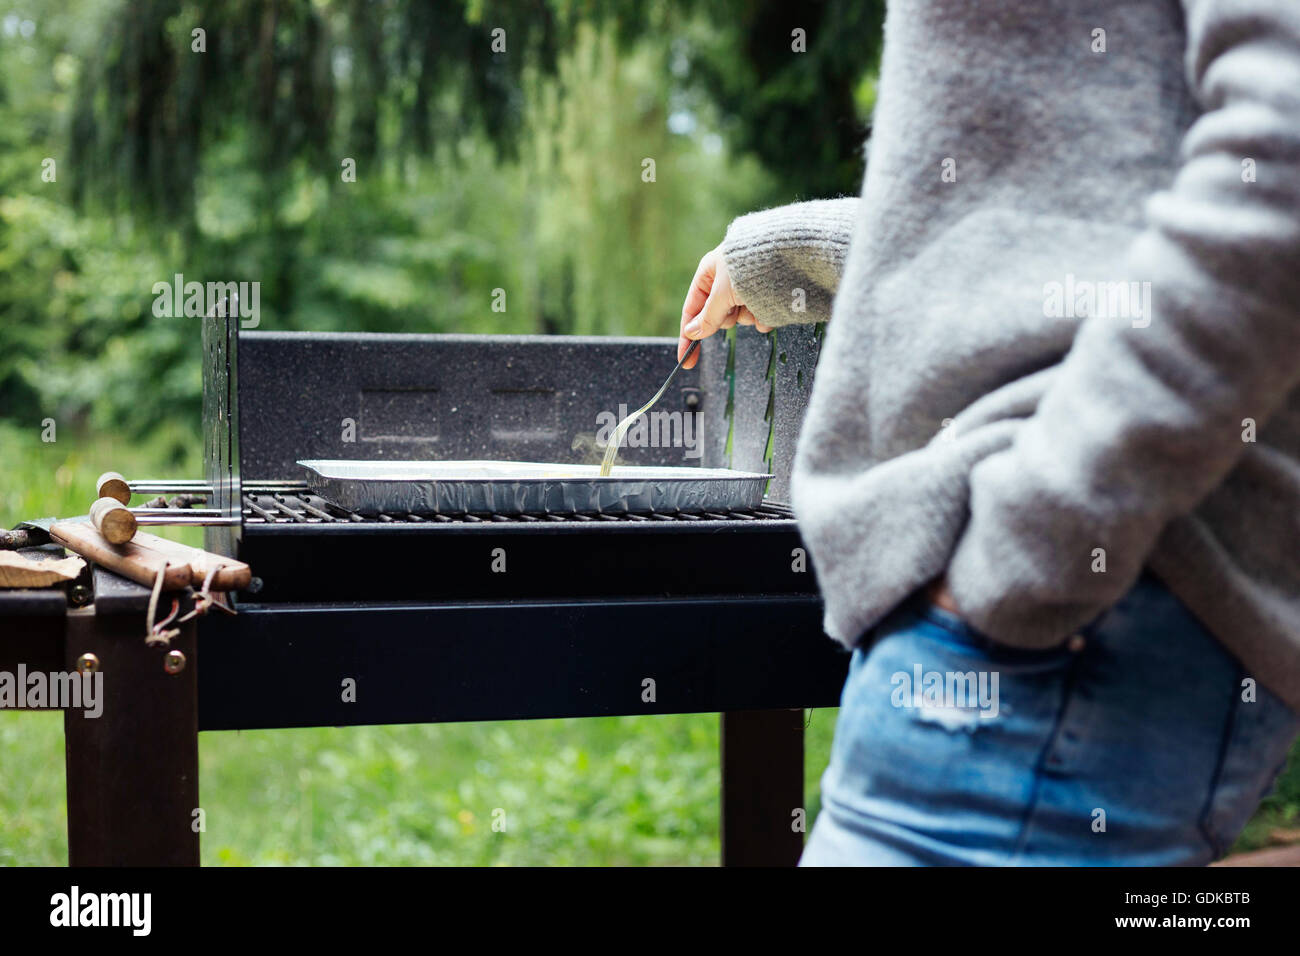 Eine Sommer-Grillparty vorbereiten Holzkohlegrill. Lifestyle-Bild, natürliches Licht, flache Schärfentiefe. Stockfoto